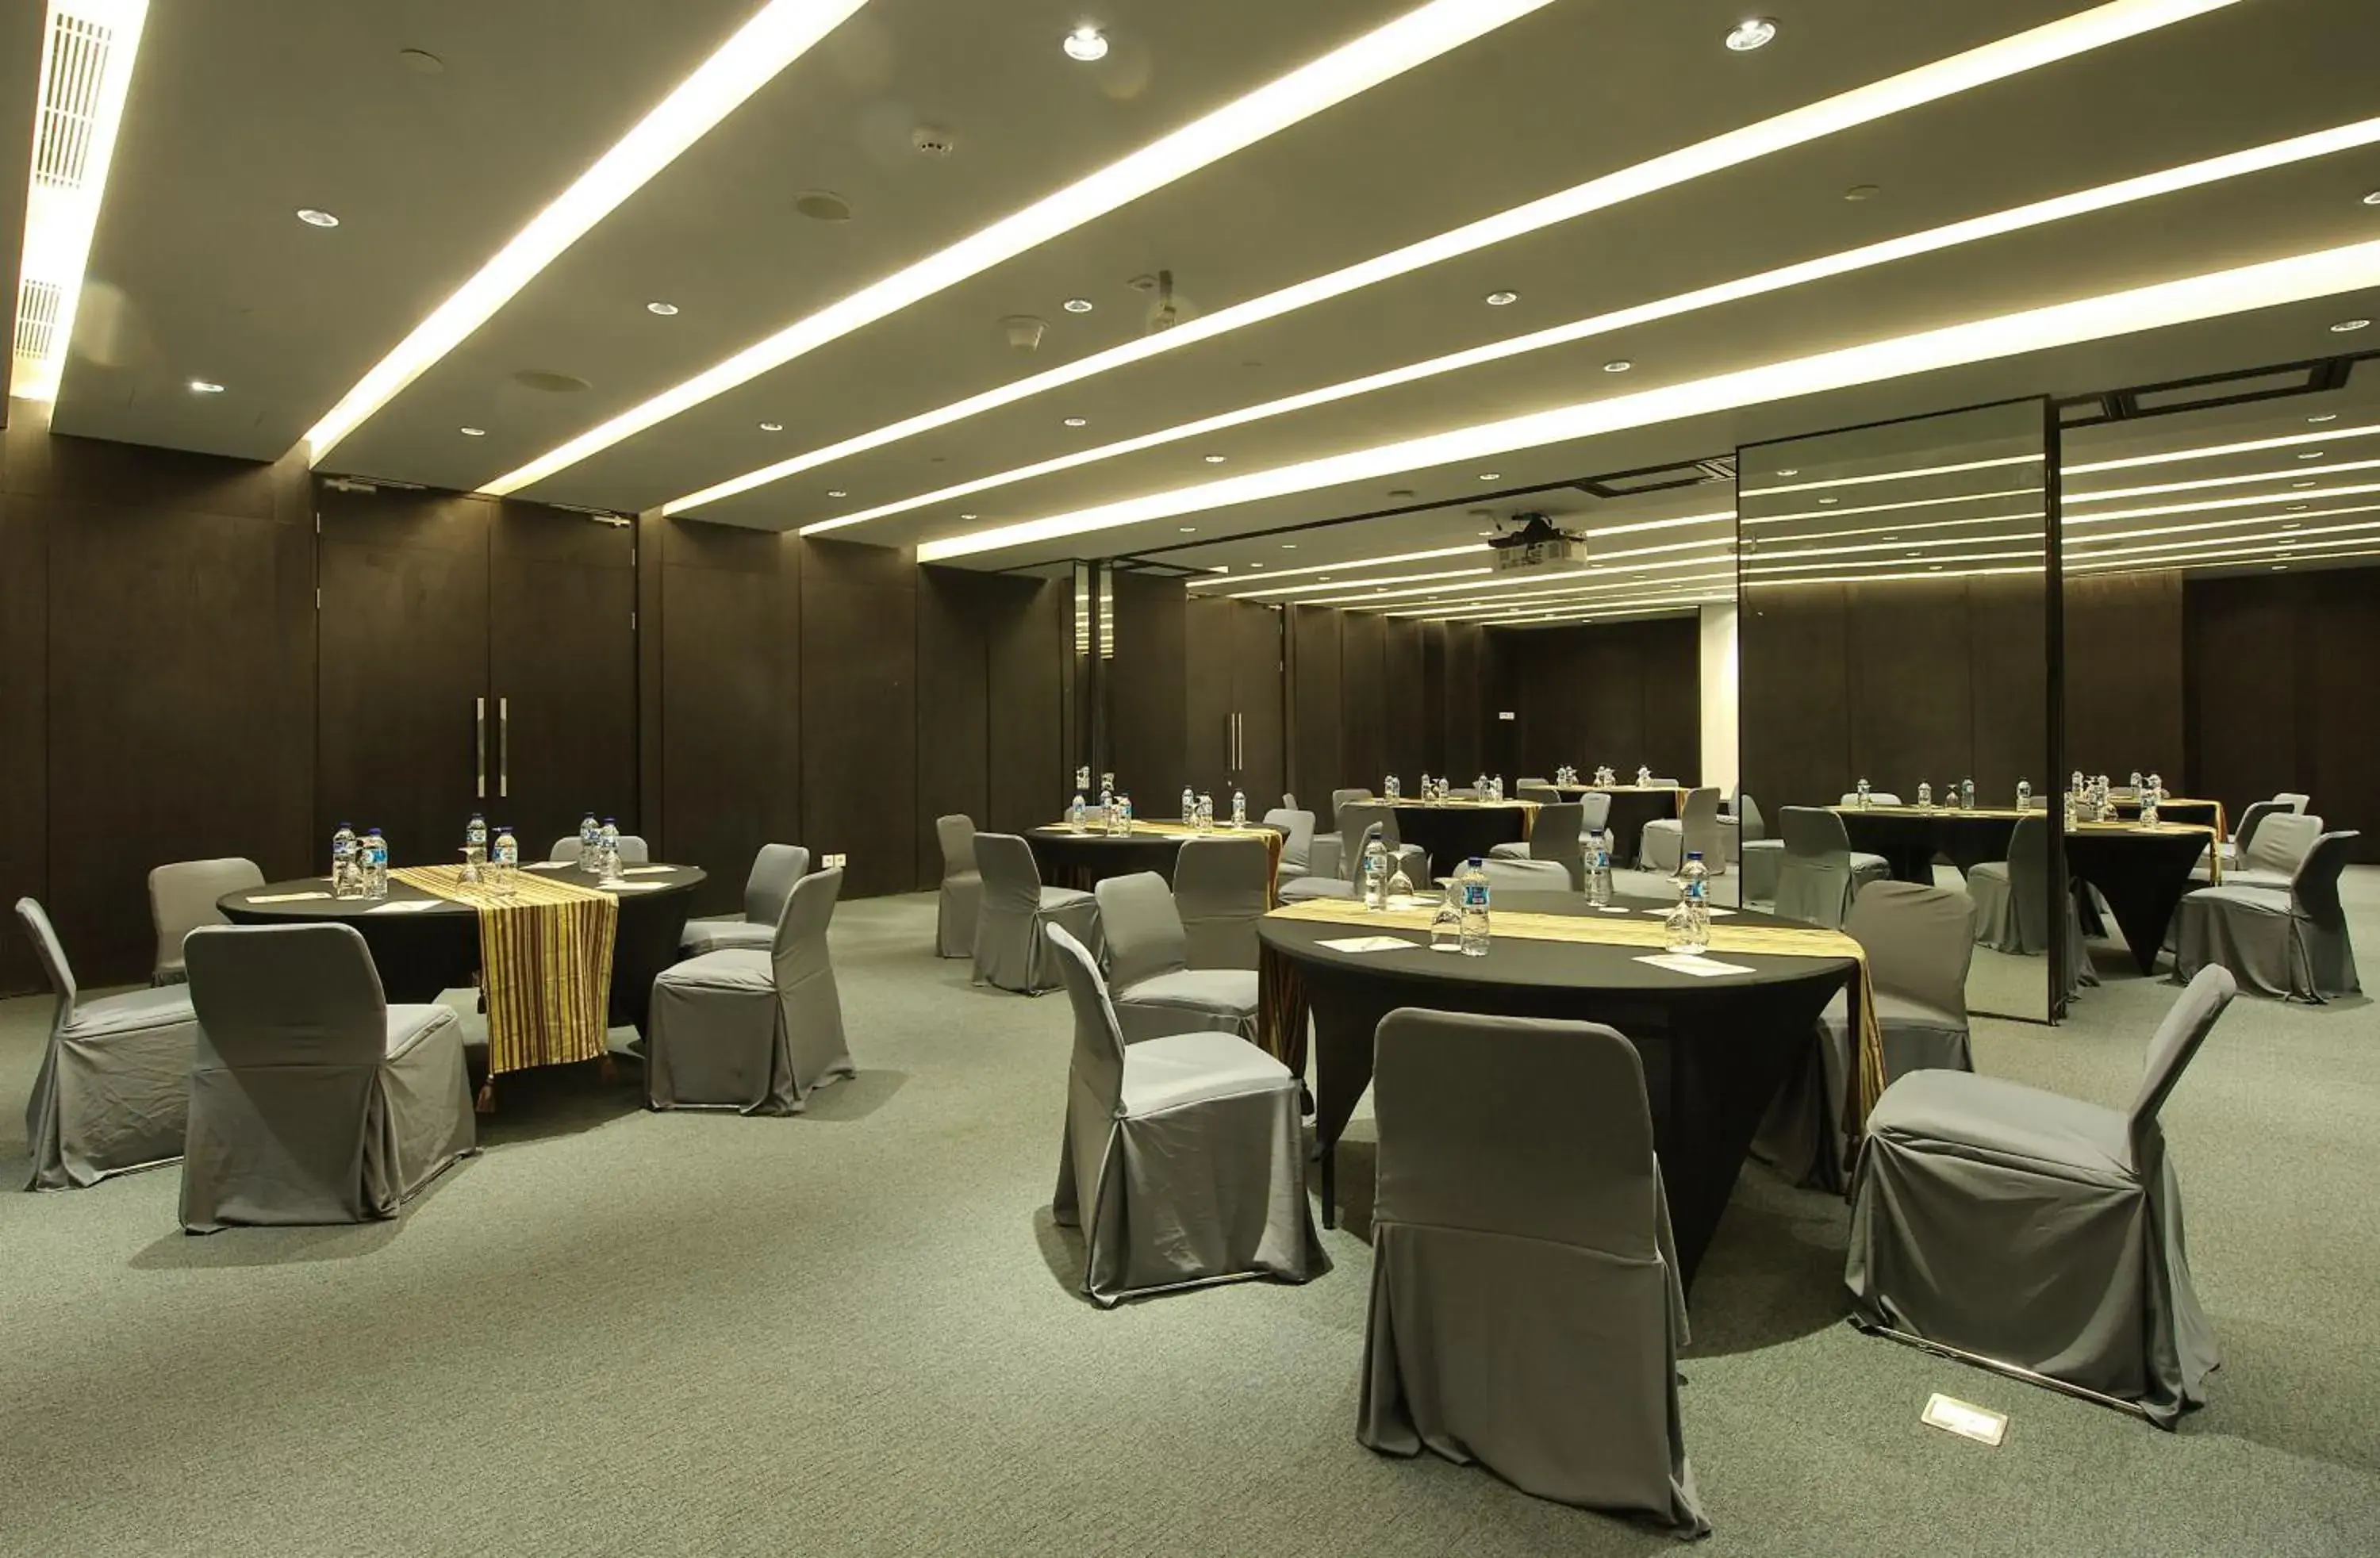 Banquet/Function facilities, Banquet Facilities in Ra Premiere Simatupang Jakarta